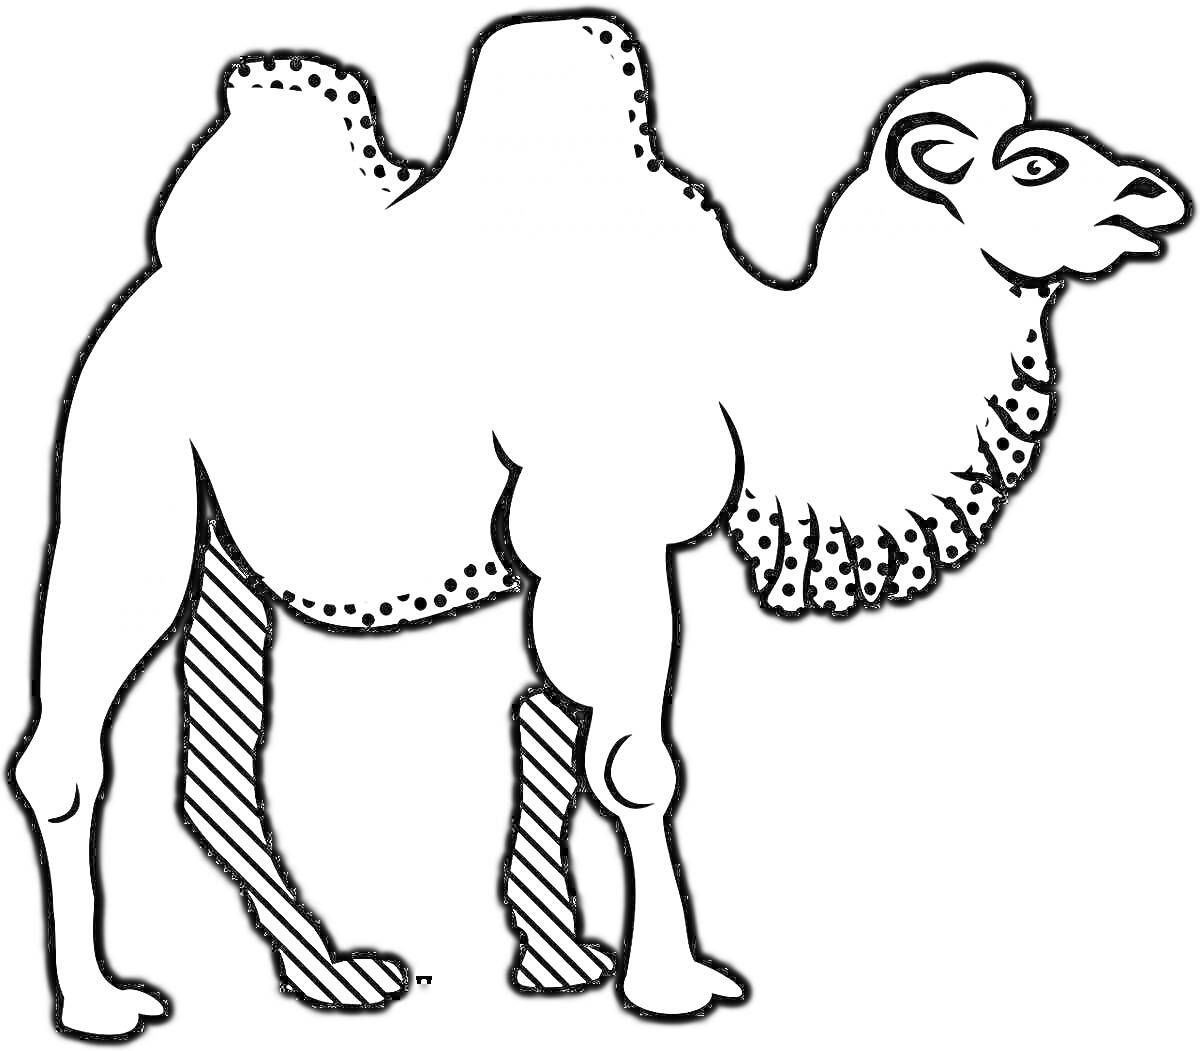 Раскраска Верблюд с двумя горбами и орнаментом на шее